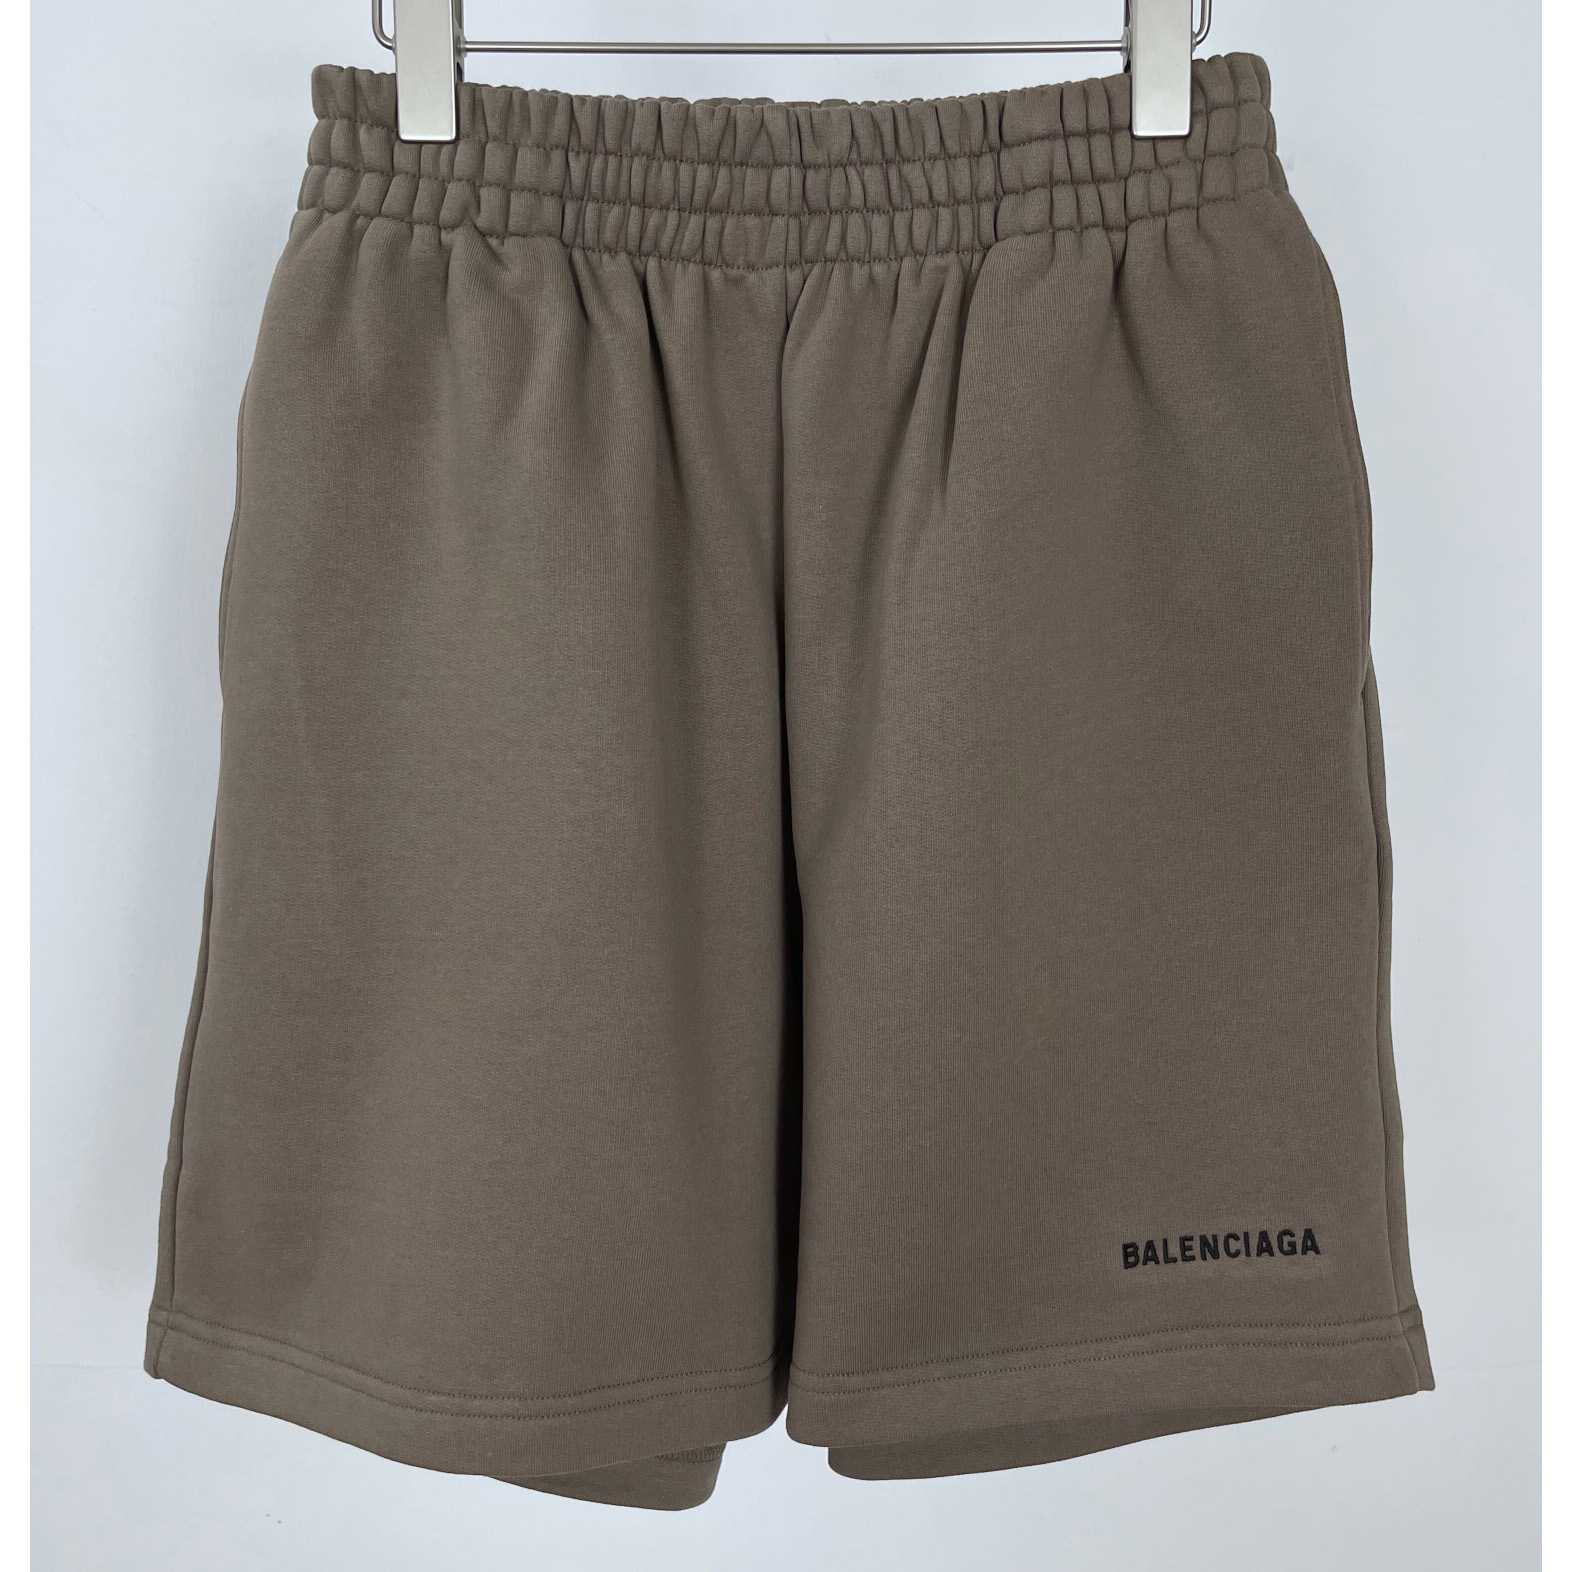 Balenciaga Cotton Shorts  - everydesigner